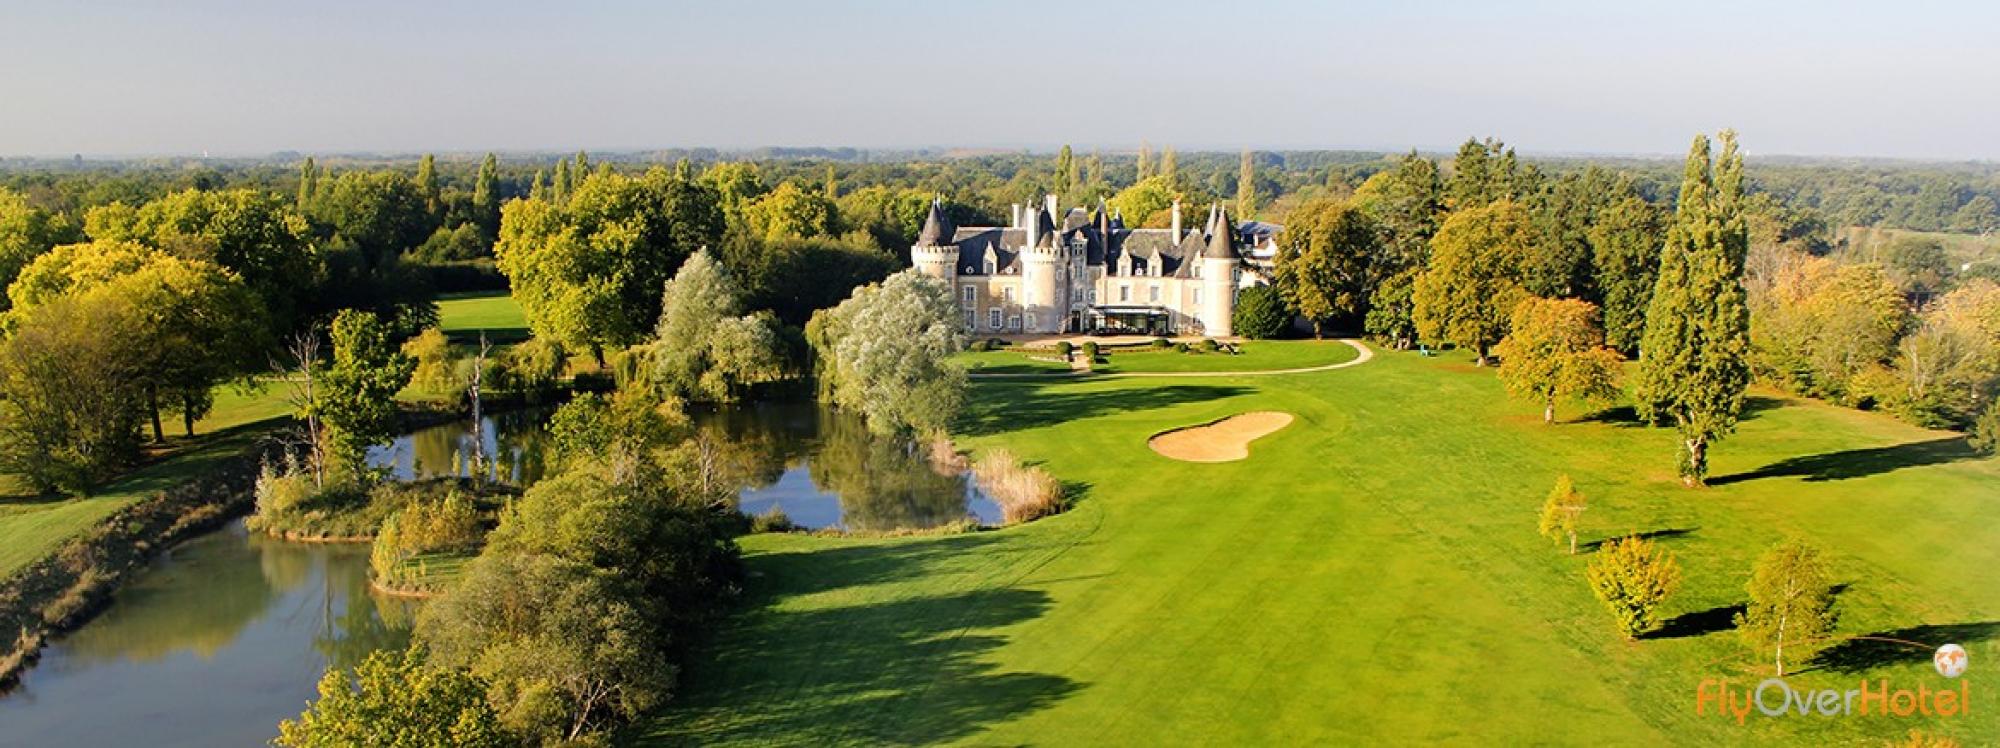 Chateau des Sept Tours Golf Course